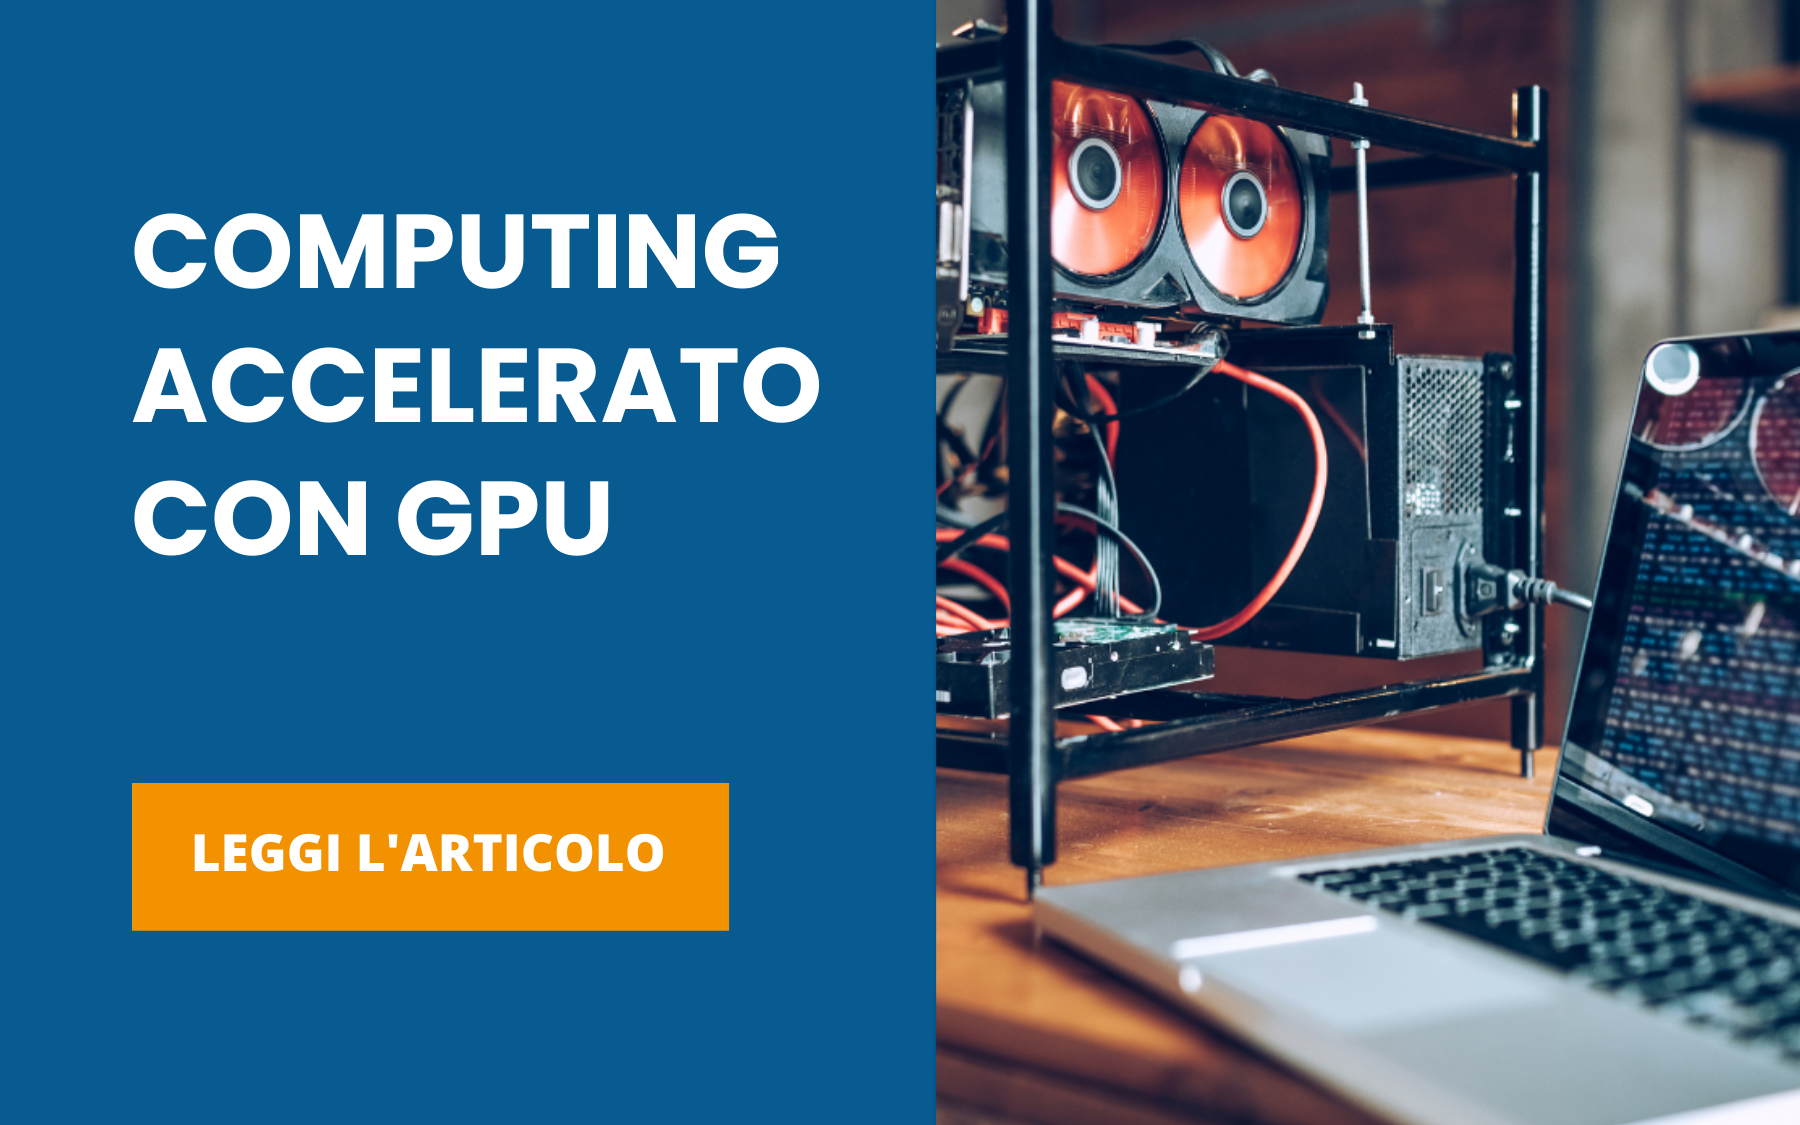 Computing accelerato con GPU